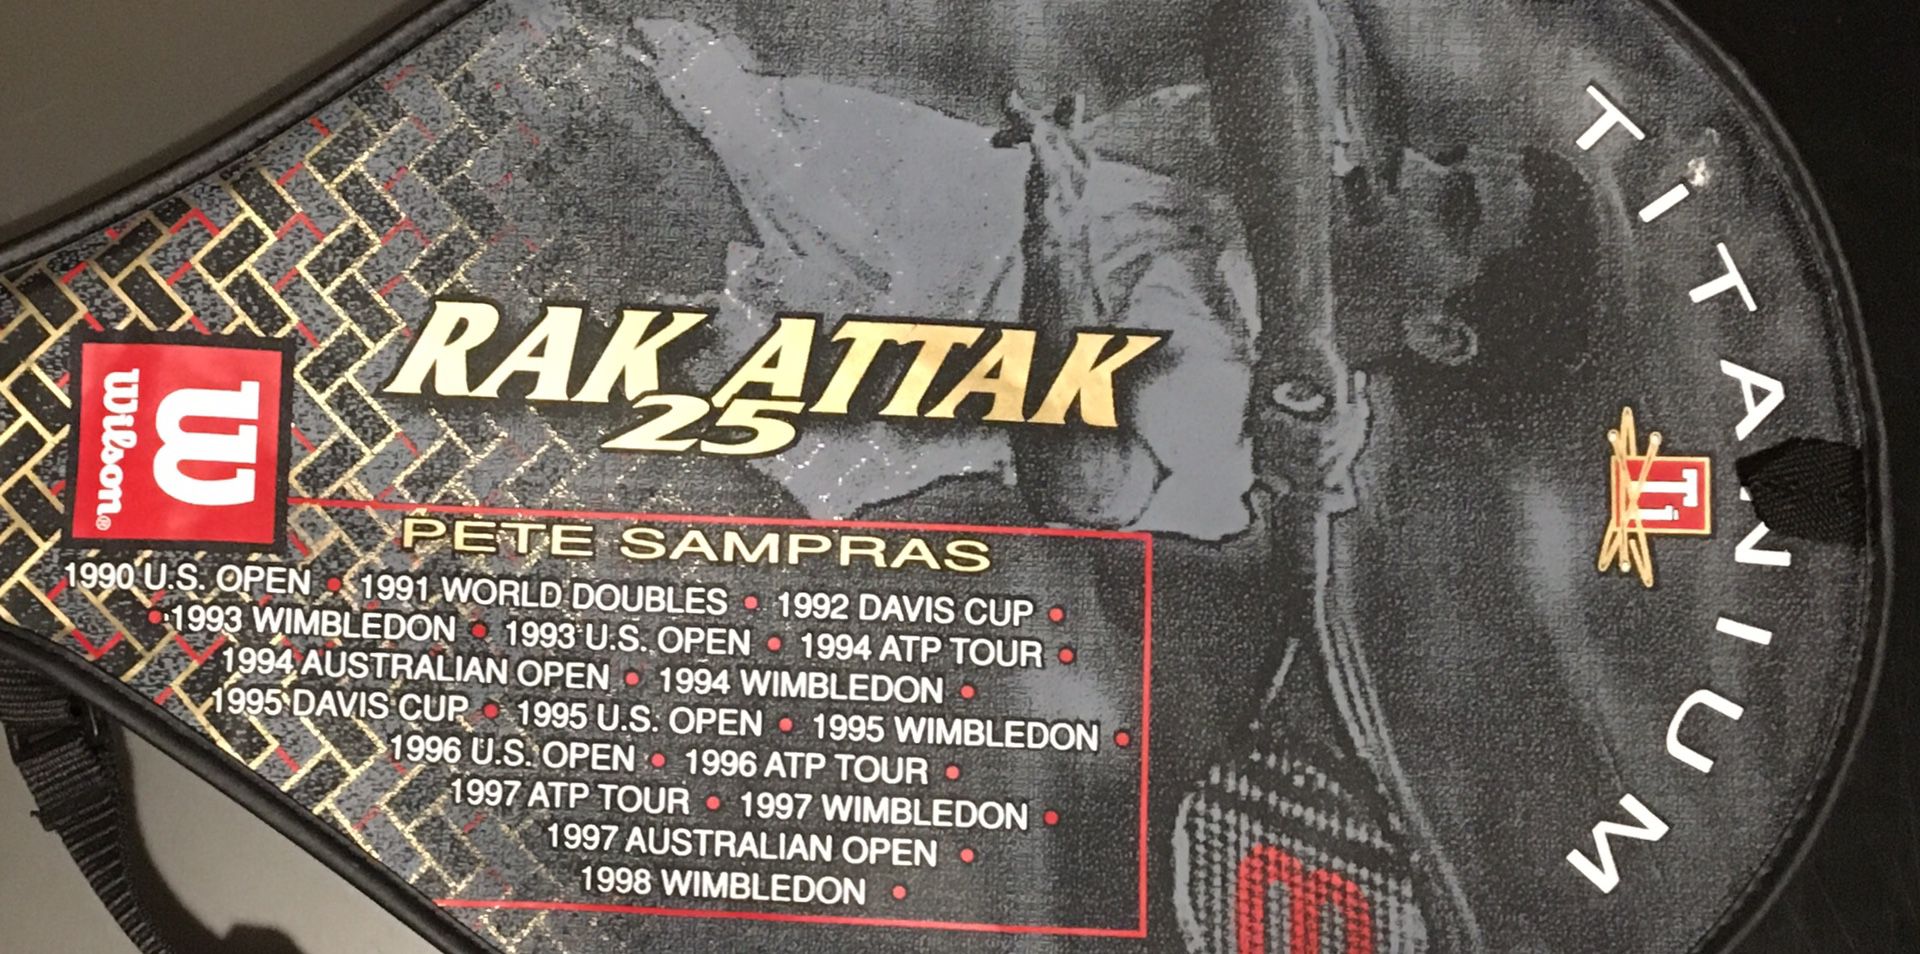 (2) Pete Sampras RAK ATTAK 25 Tennis Rackets